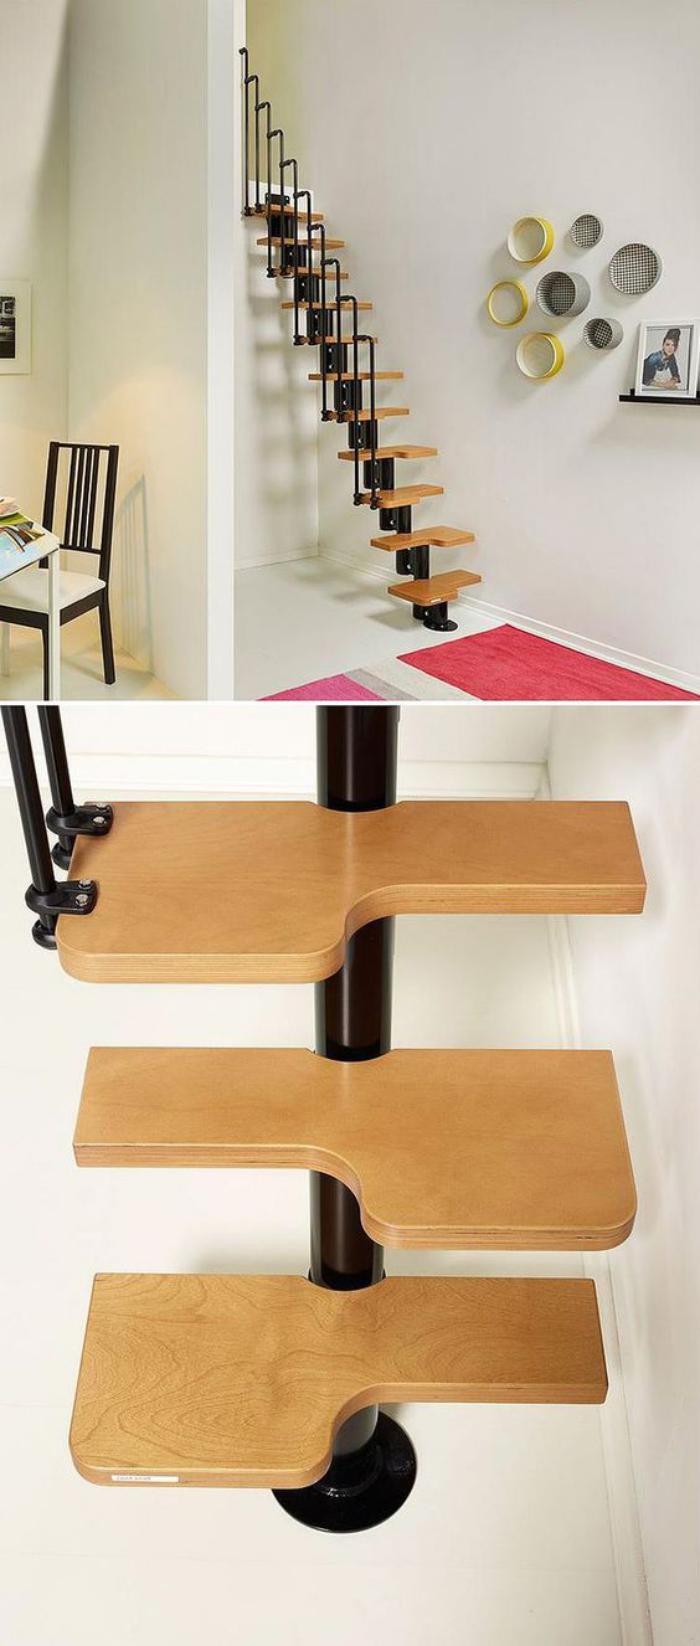 escalier-modulaire-avec-marches-a-ajuster-designs-descalier-epargnant-espace